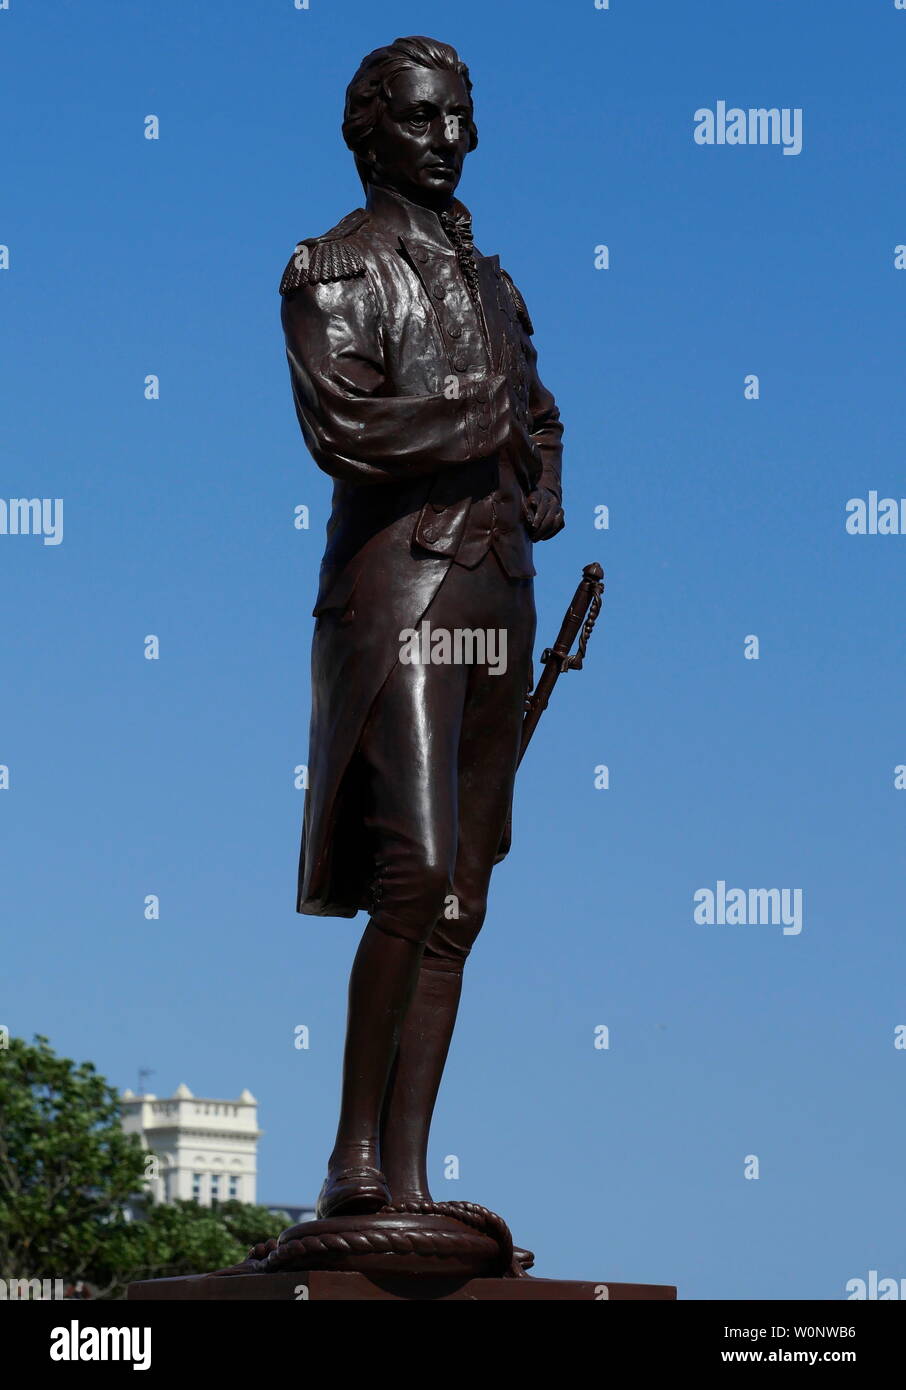 AJAXNETPHOTO. 3. JUNI, 2019. Fareham, England. - TRAFALGAR HELD - Bronze Statue der Schlacht von Trafalgar COMMANDER Admiral Horatio Nelson IN DER NÄHE VON GRAND PARADE, Portsmouth. STATUE WURDE VON EINEM STREIT ZWISCHEN PORTSMOUTH RAT UND DEMONSTRANTEN GEGEN VERSCHIEBEN VON SEINEM URSPRÜNGLICHEN Standort in der Nähe von Southsea Common NÄHER AM MEER. Foto: Jonathan Eastland/AJAX REF: GX8 190306 369 Stockfoto